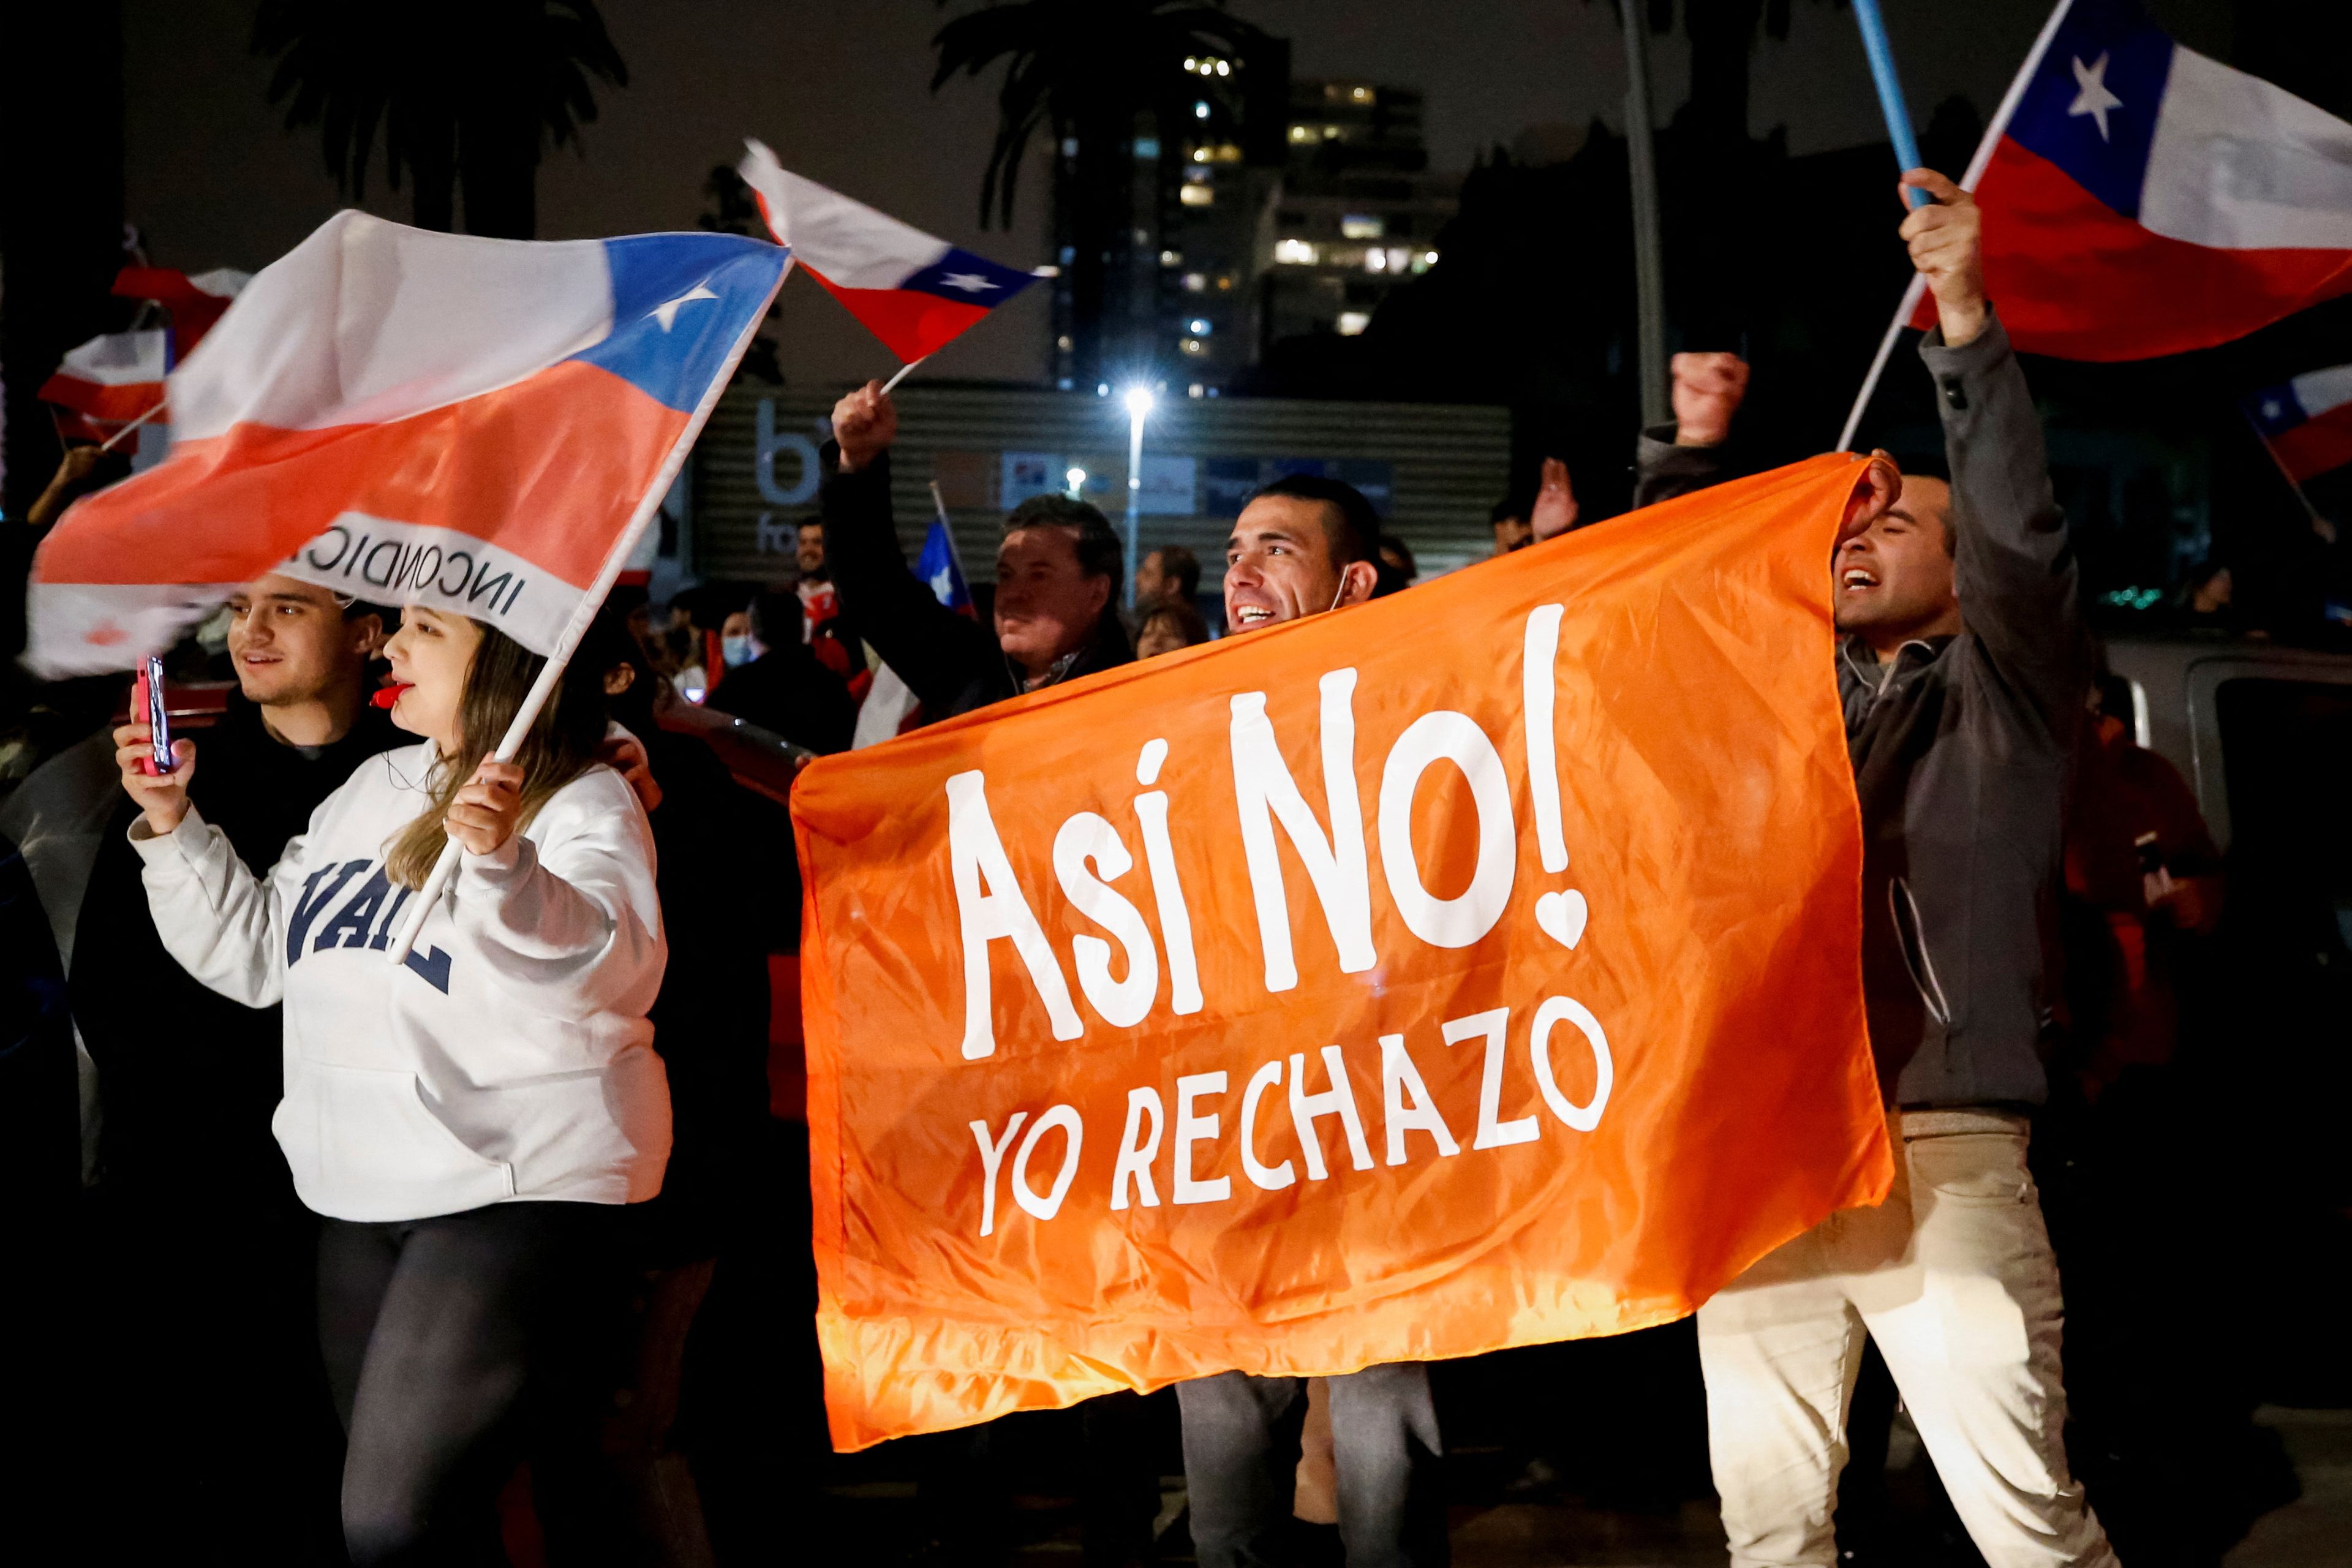 Los chilenos han rechazado la propuesta de una nueva Constitución, lo que mantiene de momento el texto actual redactado en 1980 por la dictadura militar de Pinochet.